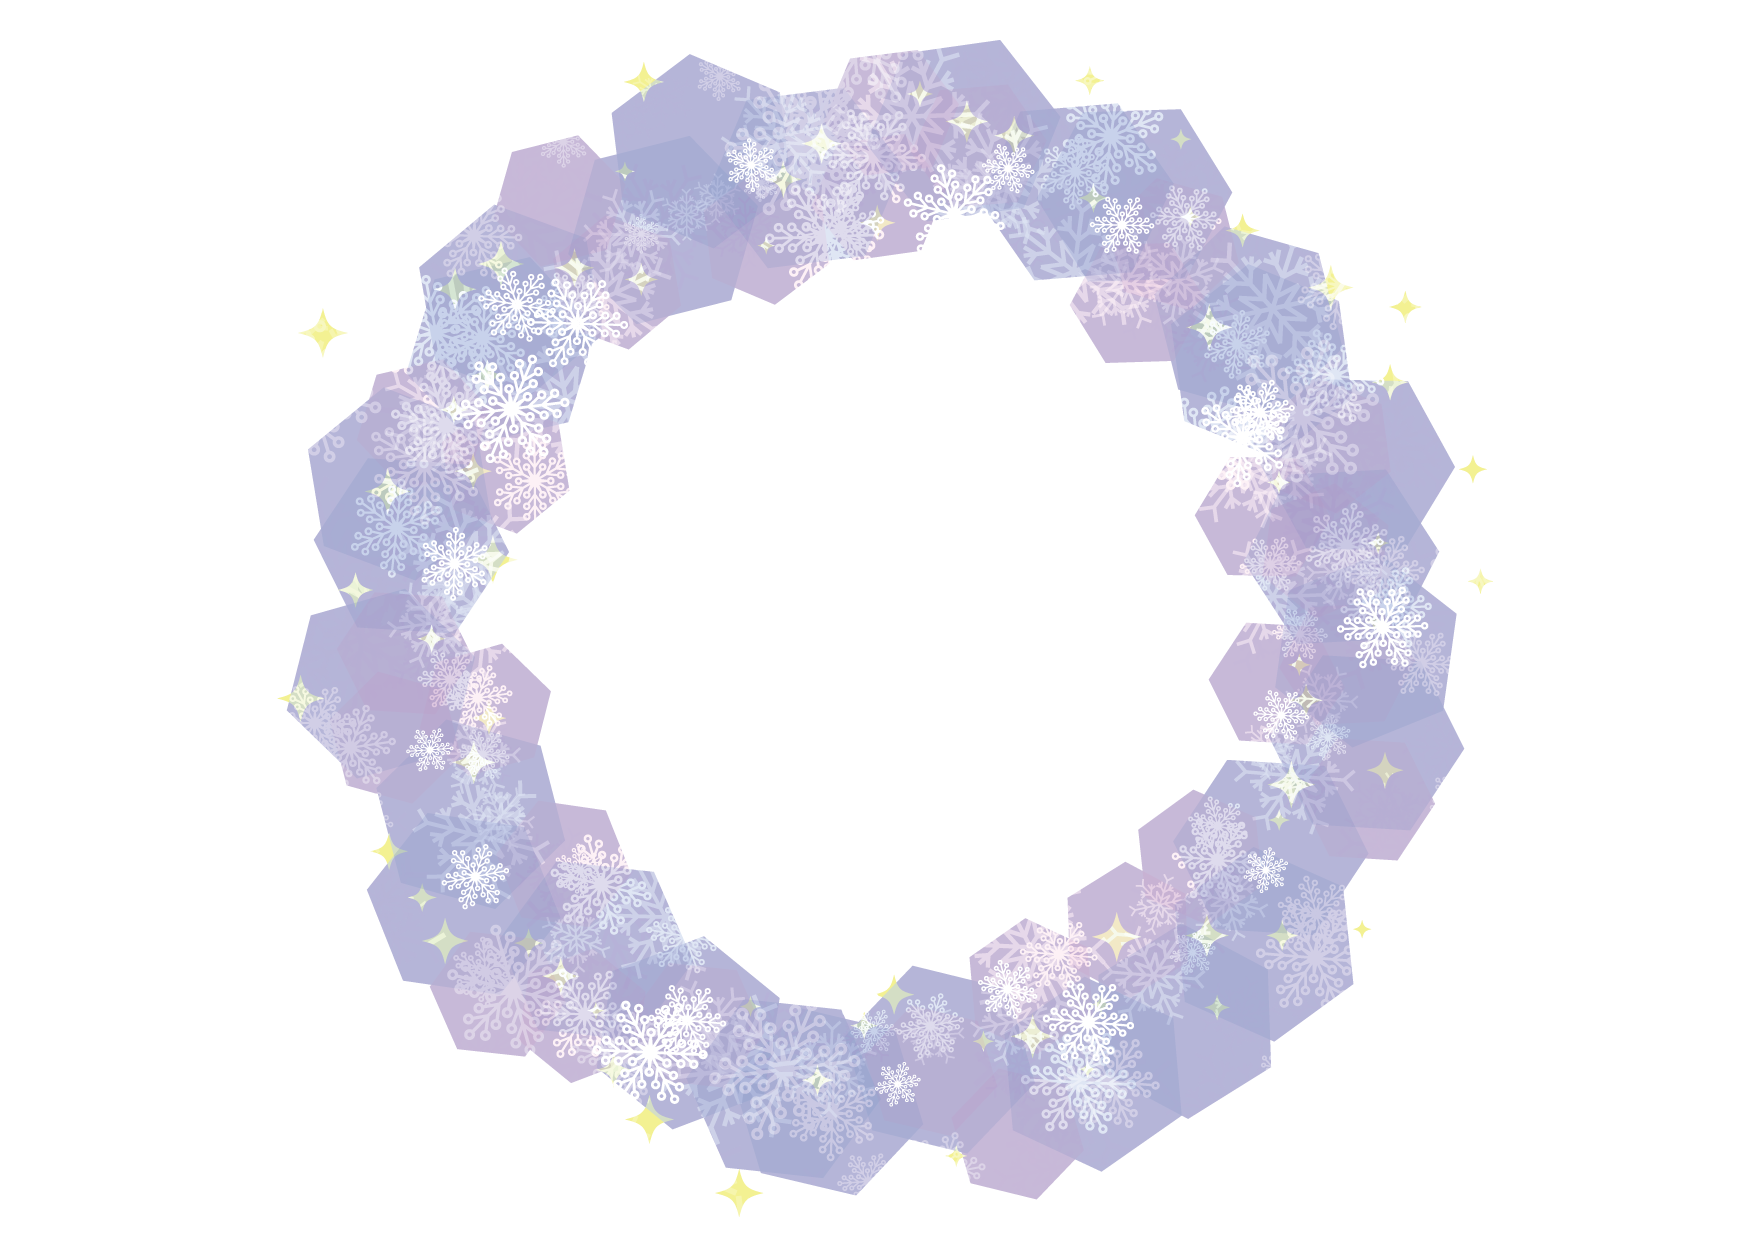 可愛いイラスト無料 雪の結晶 フレーム 背景 紫色 Free Illustration Snowflakes Frame Background Purple 公式 イラスト素材サイト イラストダウンロード